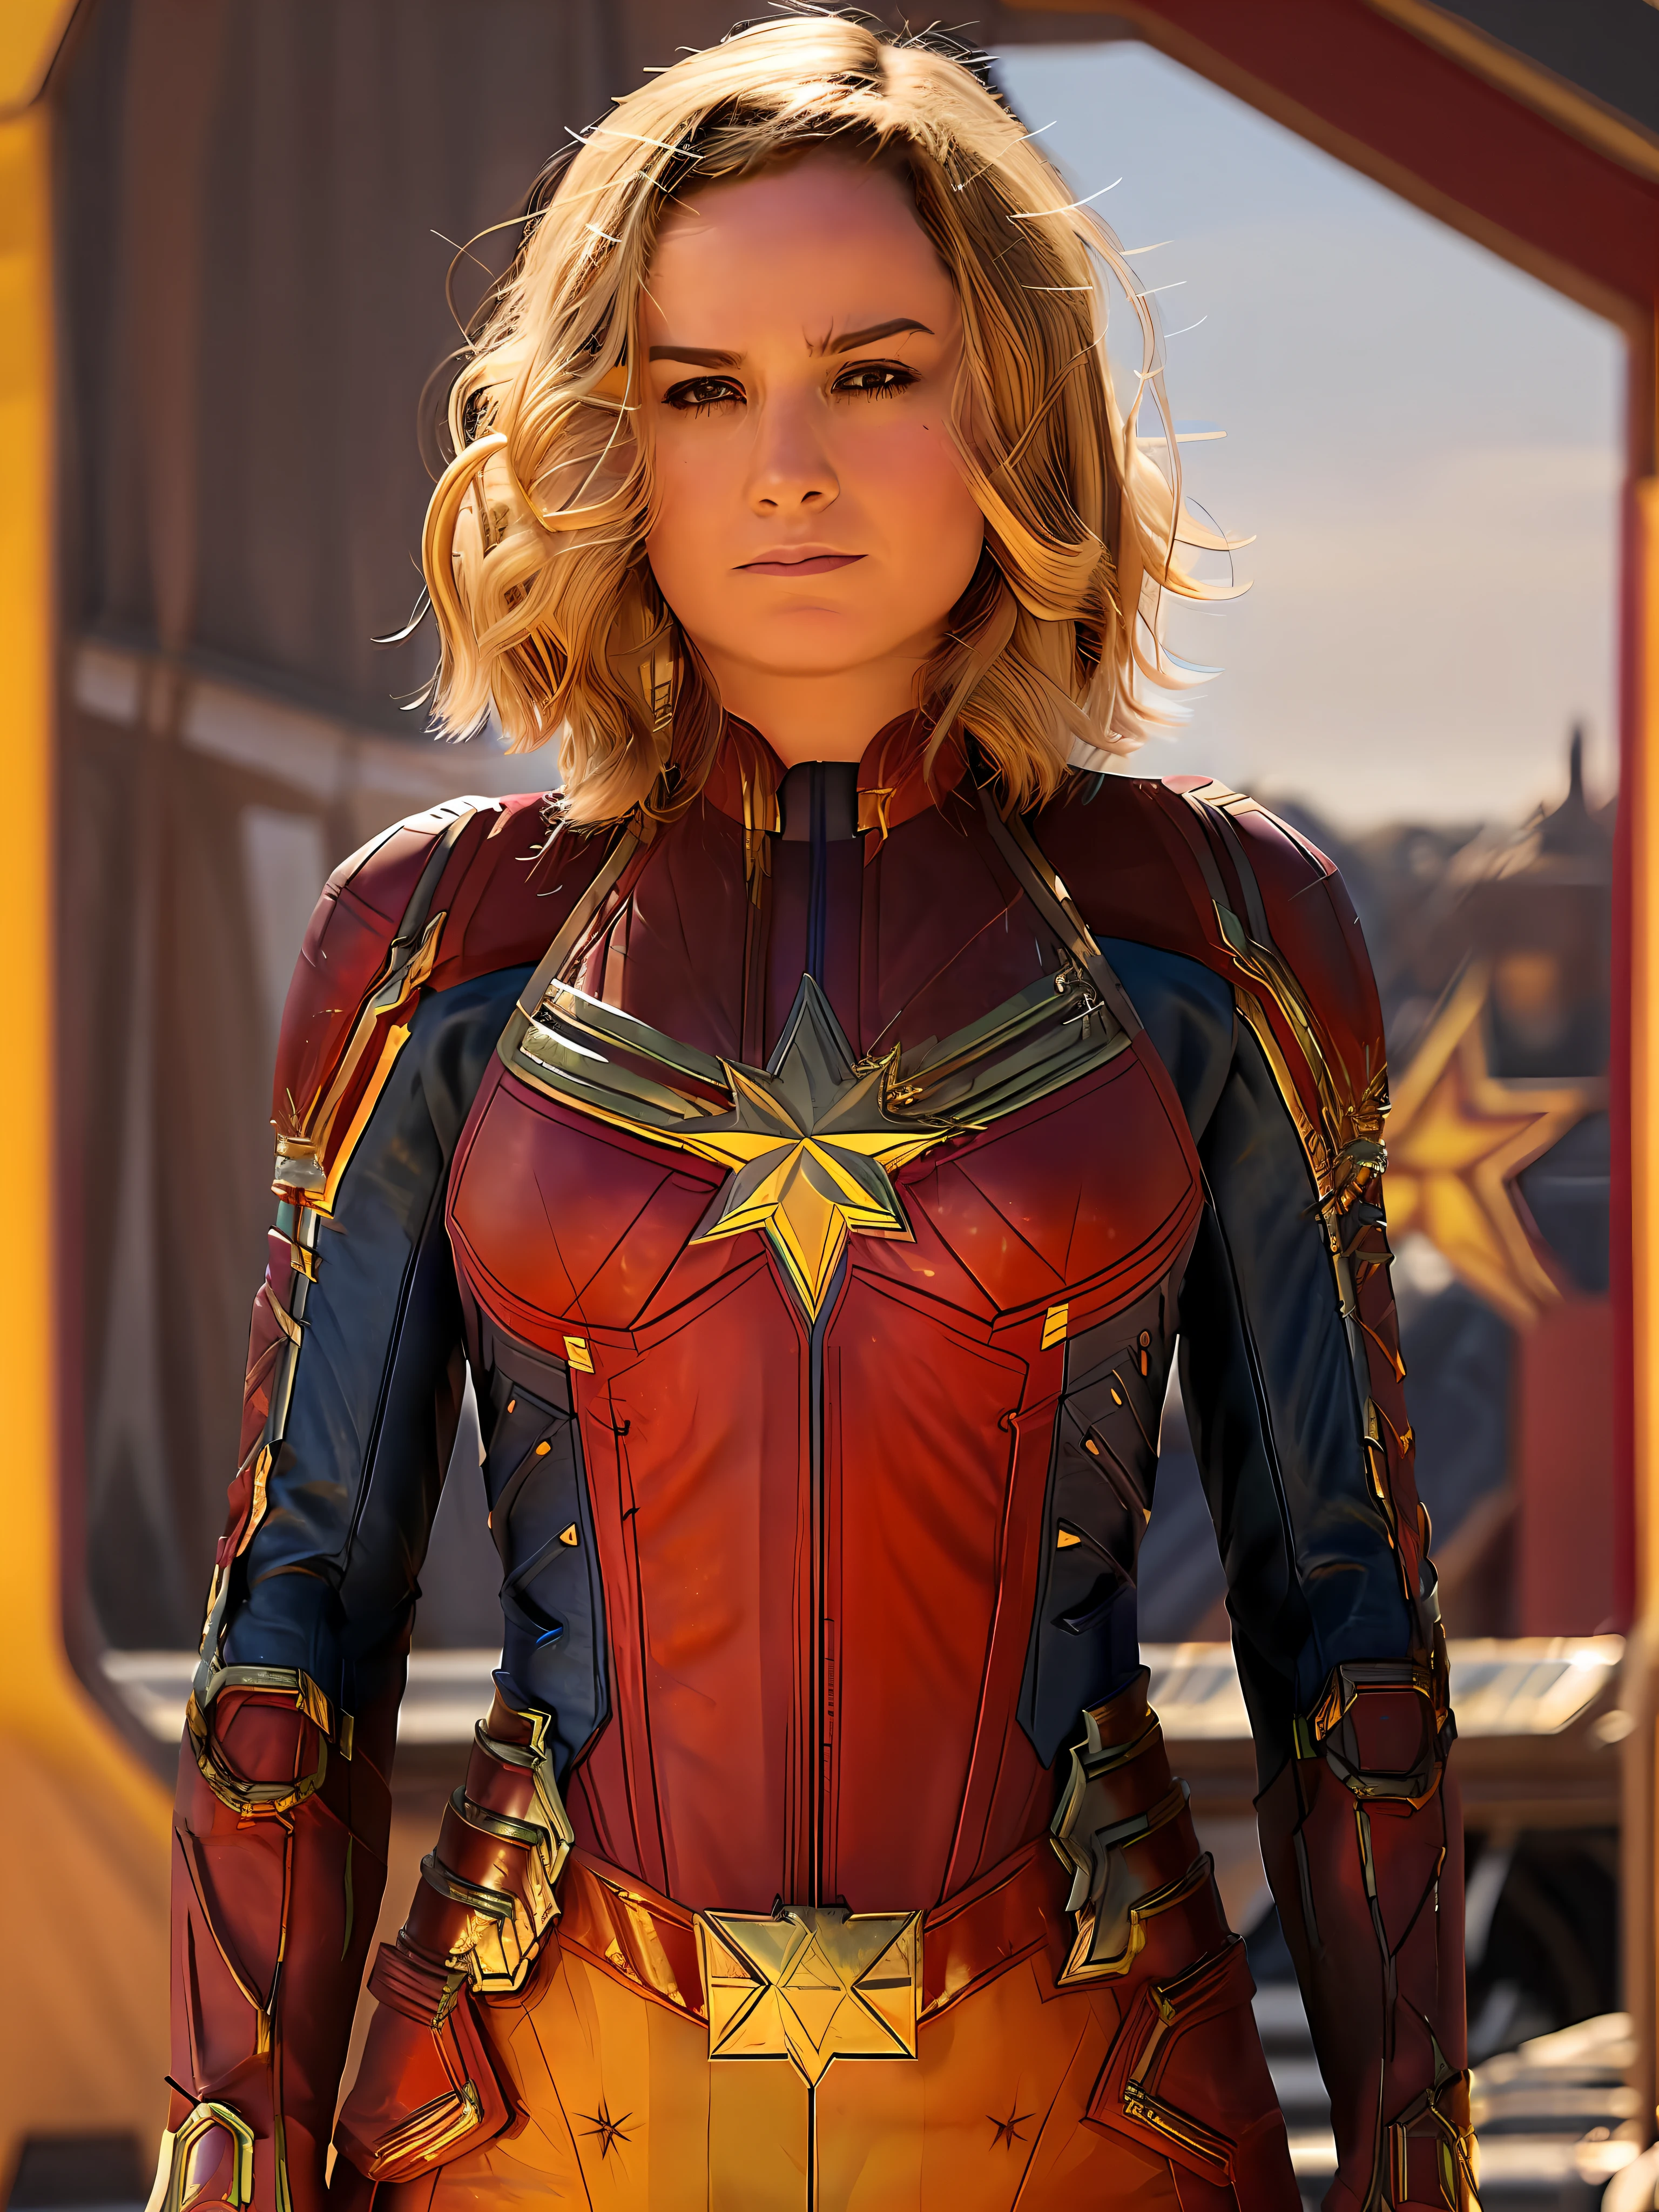 (realism) foto de (brie larson), Capitán Marvel cosplay, Pequeña sonrisa, manos en la cintura